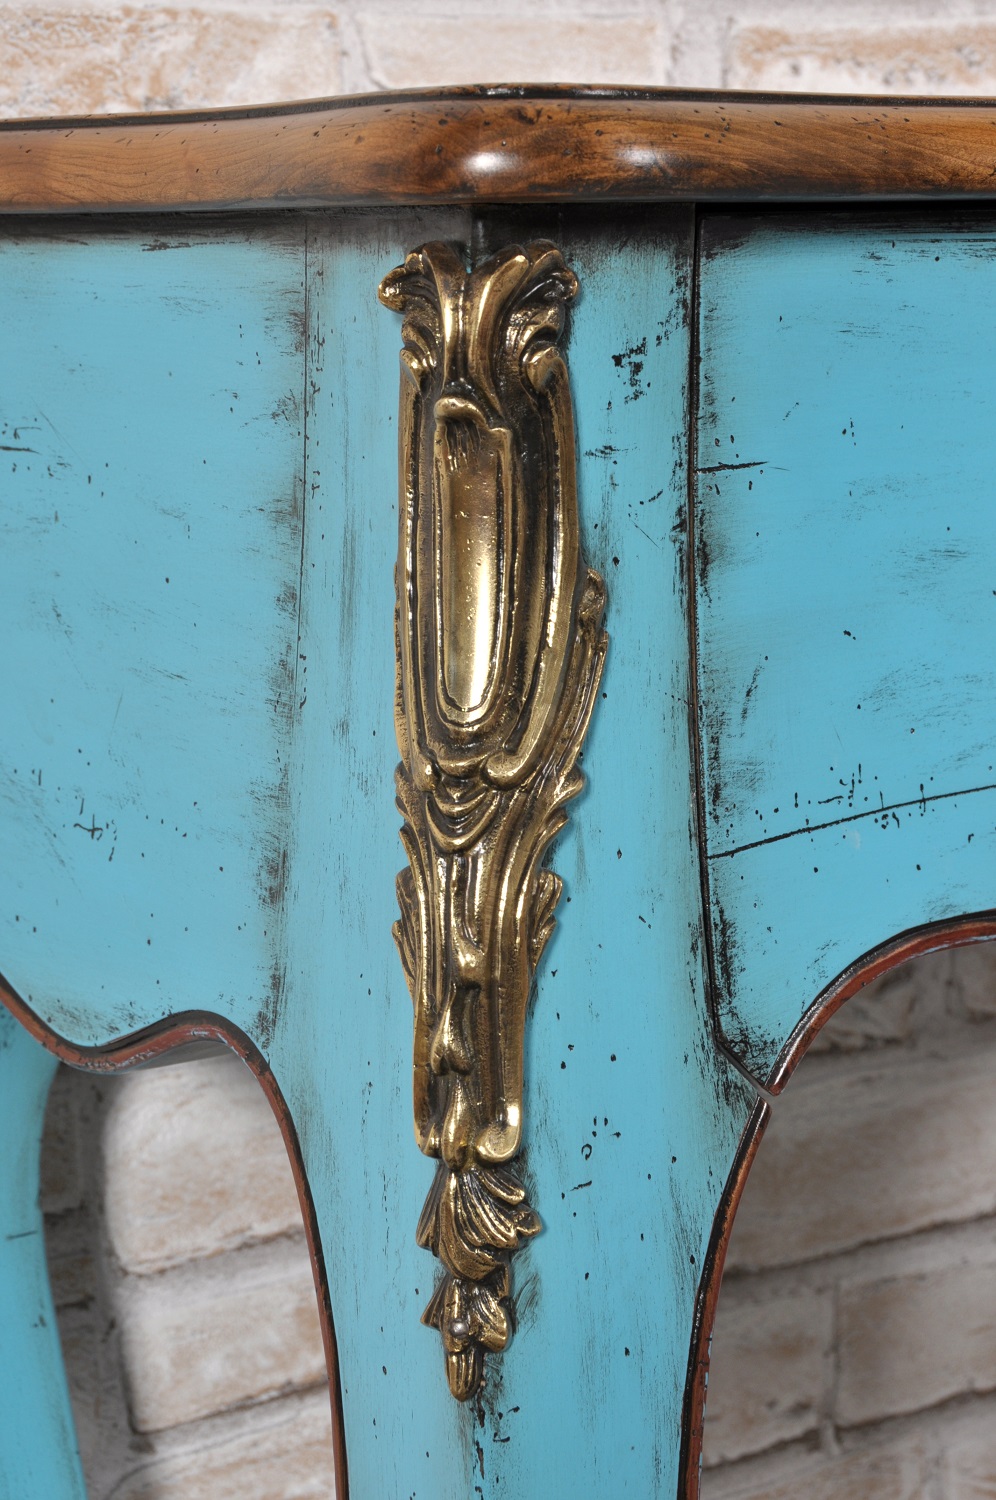 nel laboratorio di alta ebanisteria del brand artigianale di lusso viene realizzata l’accessorio in bronzo cesellato a mano nello stile classico Luigi XV francese della consolle mossa e bombata